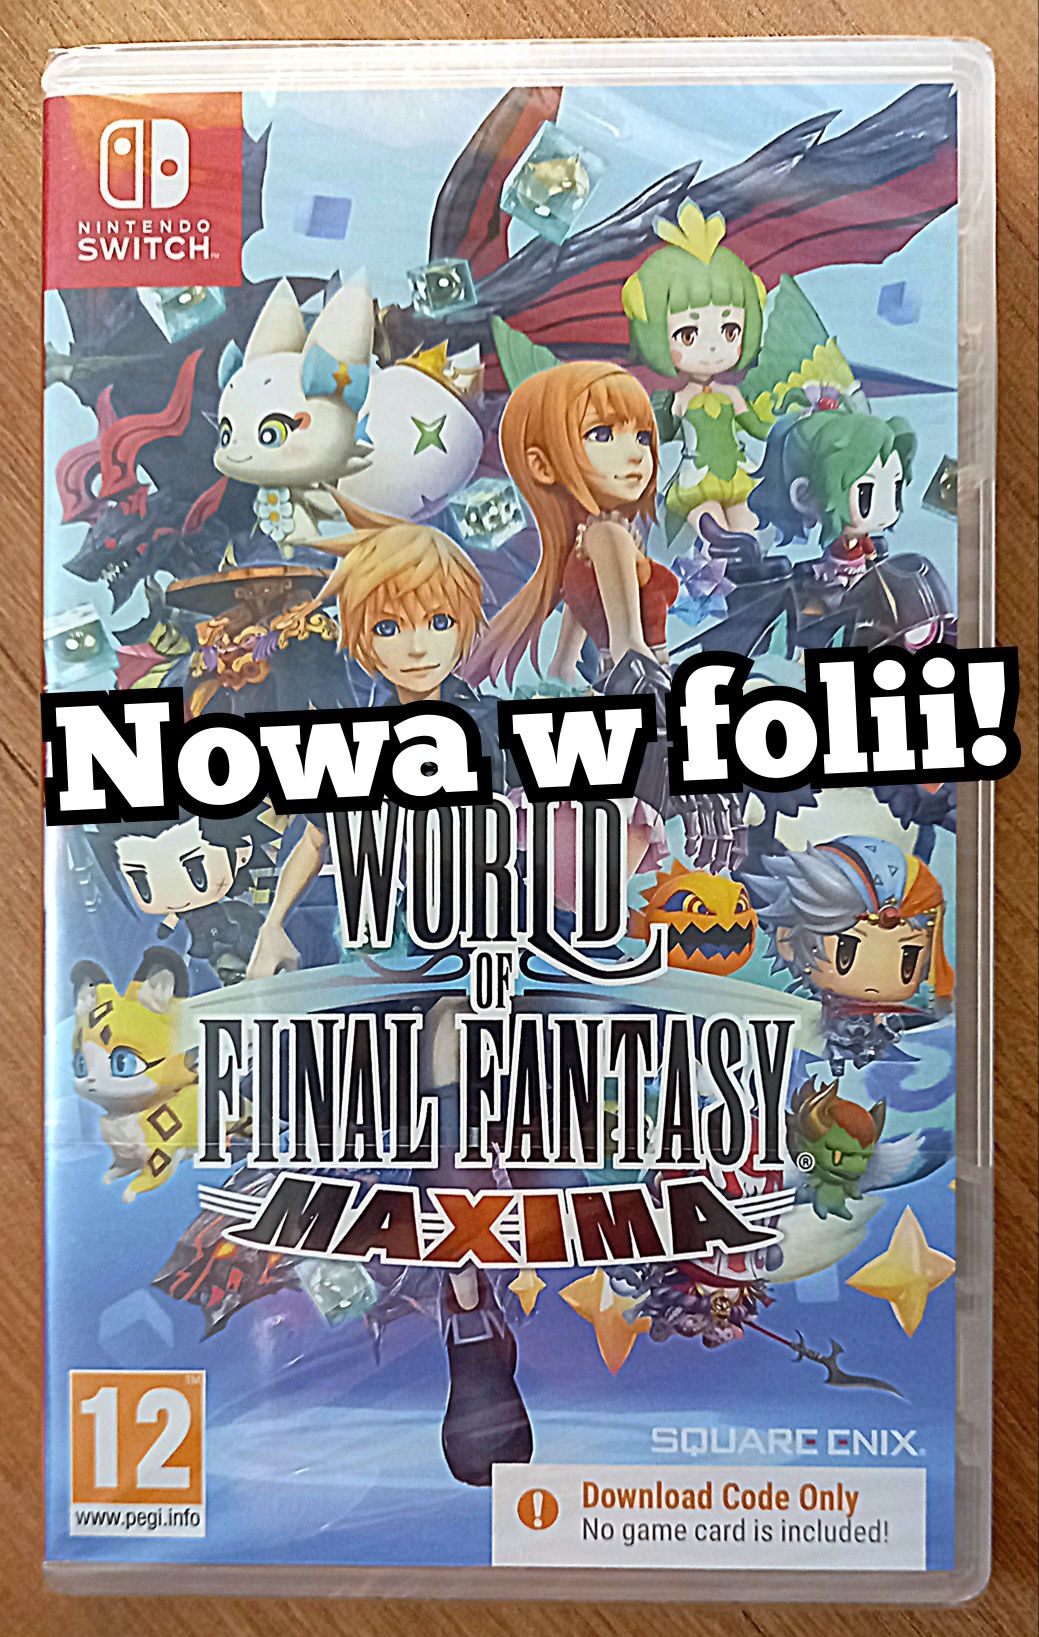 World of Final Fantasy Maxima Nintendo Switch /Nowa w folii! Sklep CH